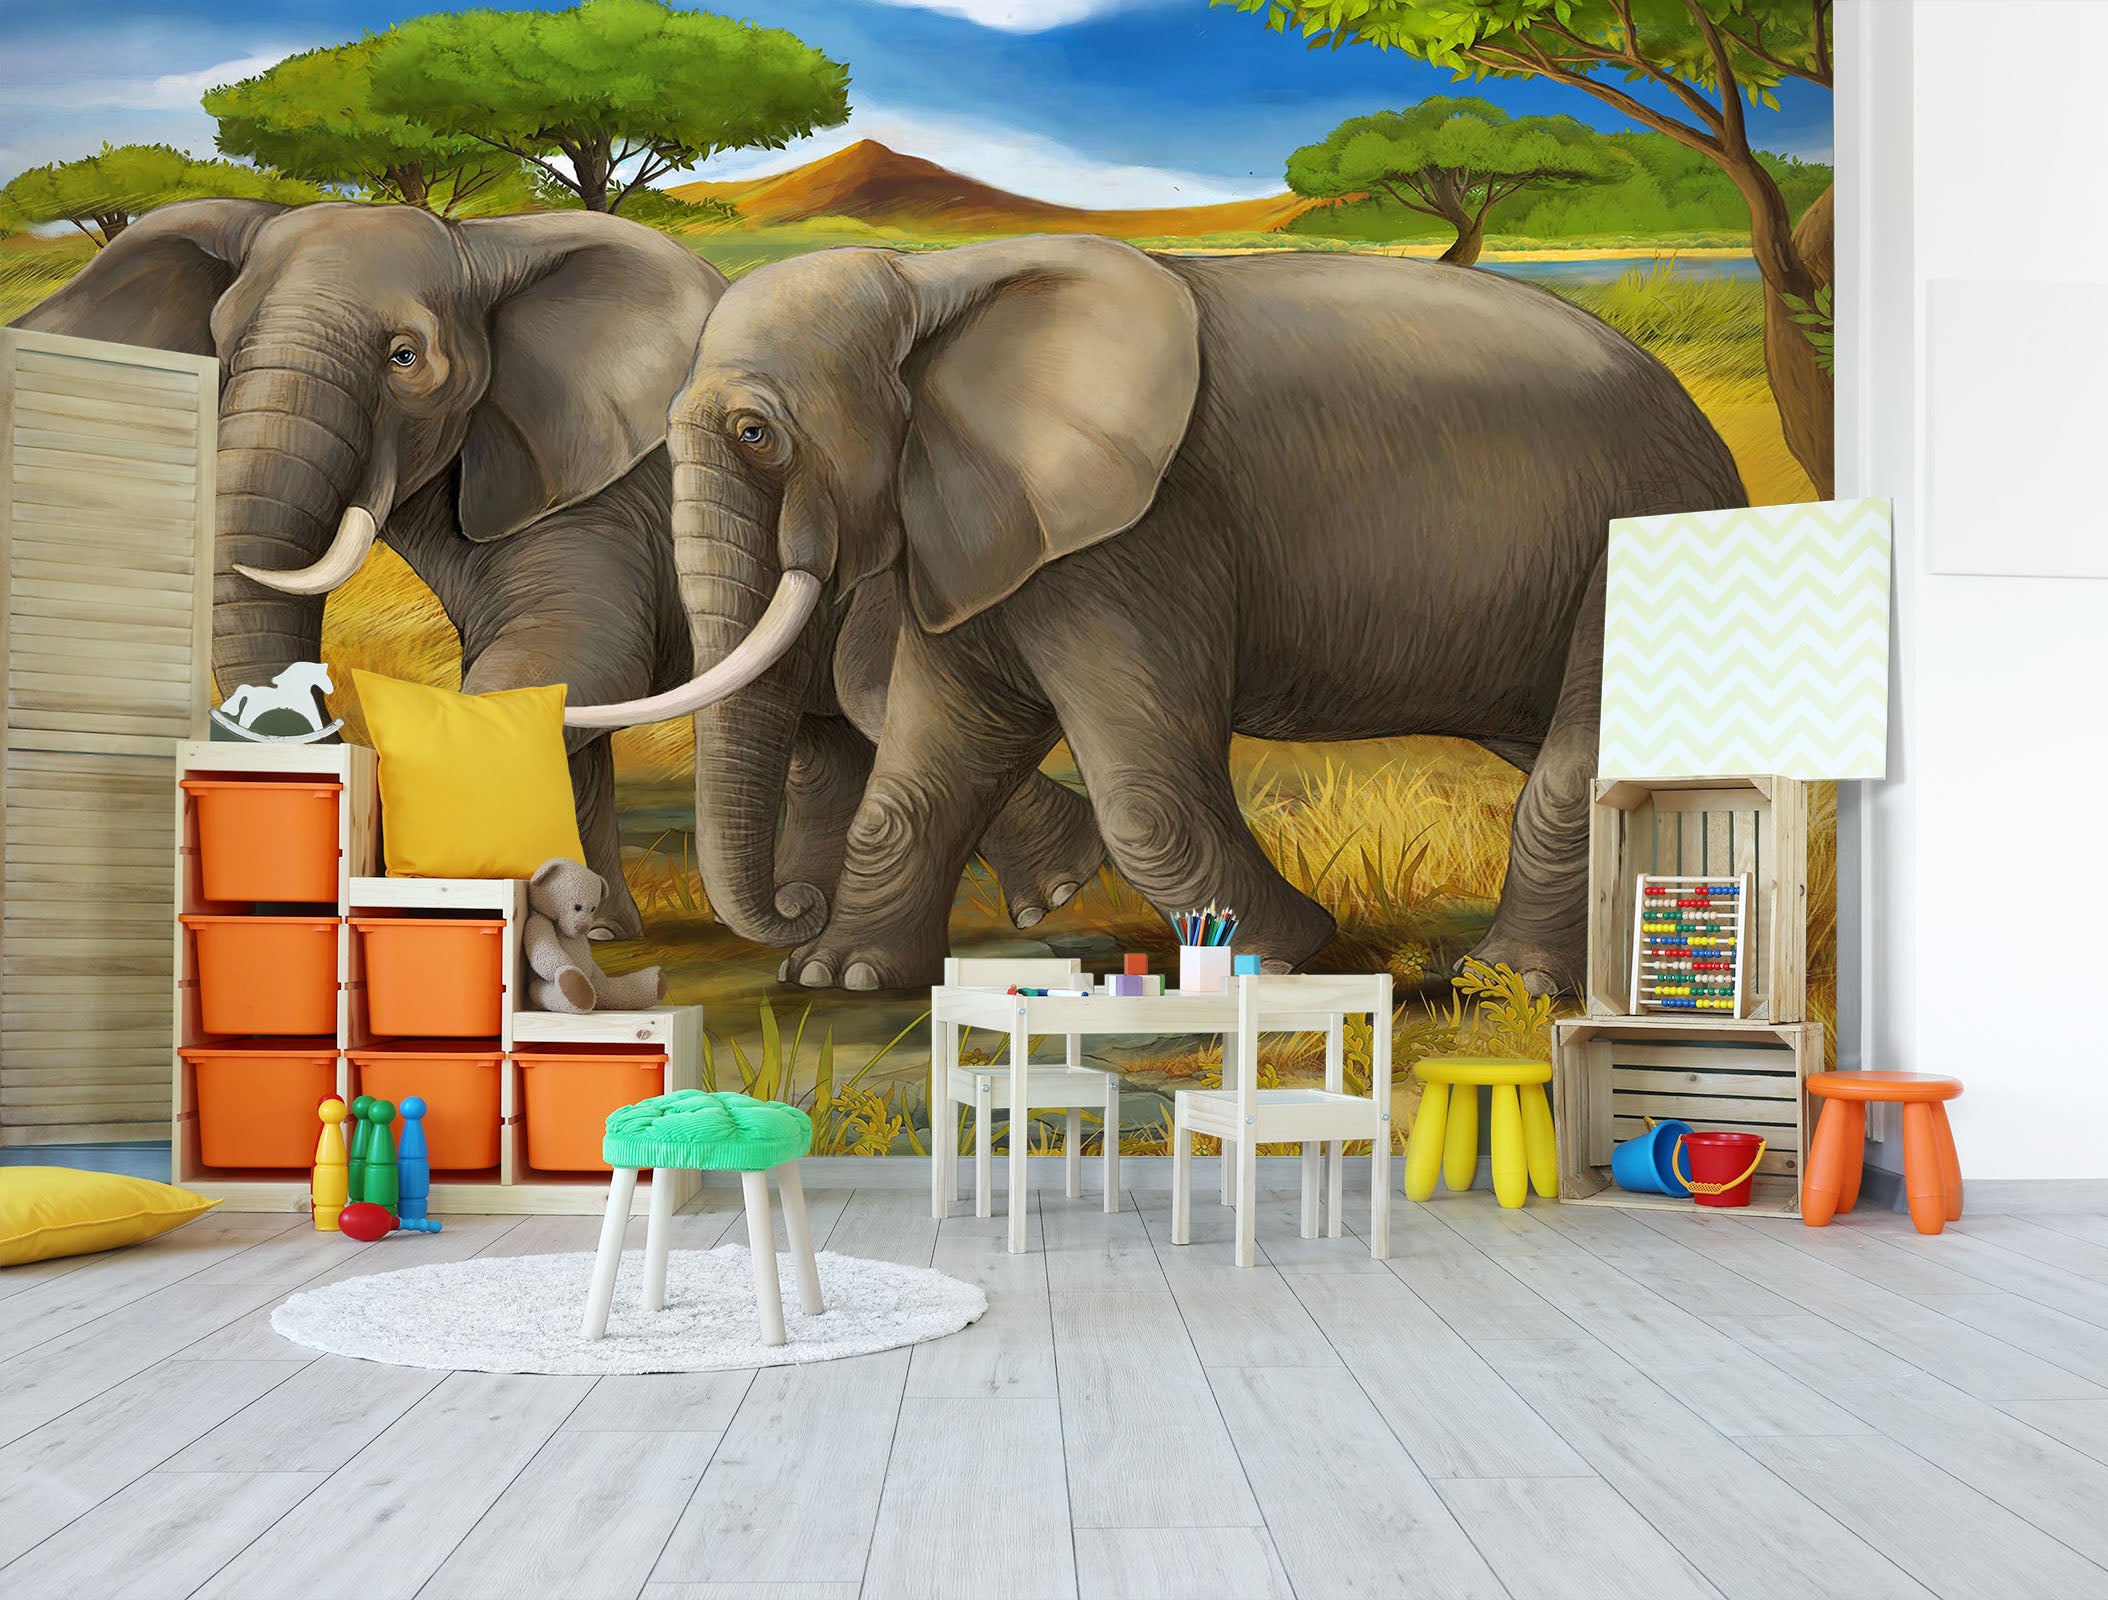 3D Steppe Elephant 293 Wall Murals